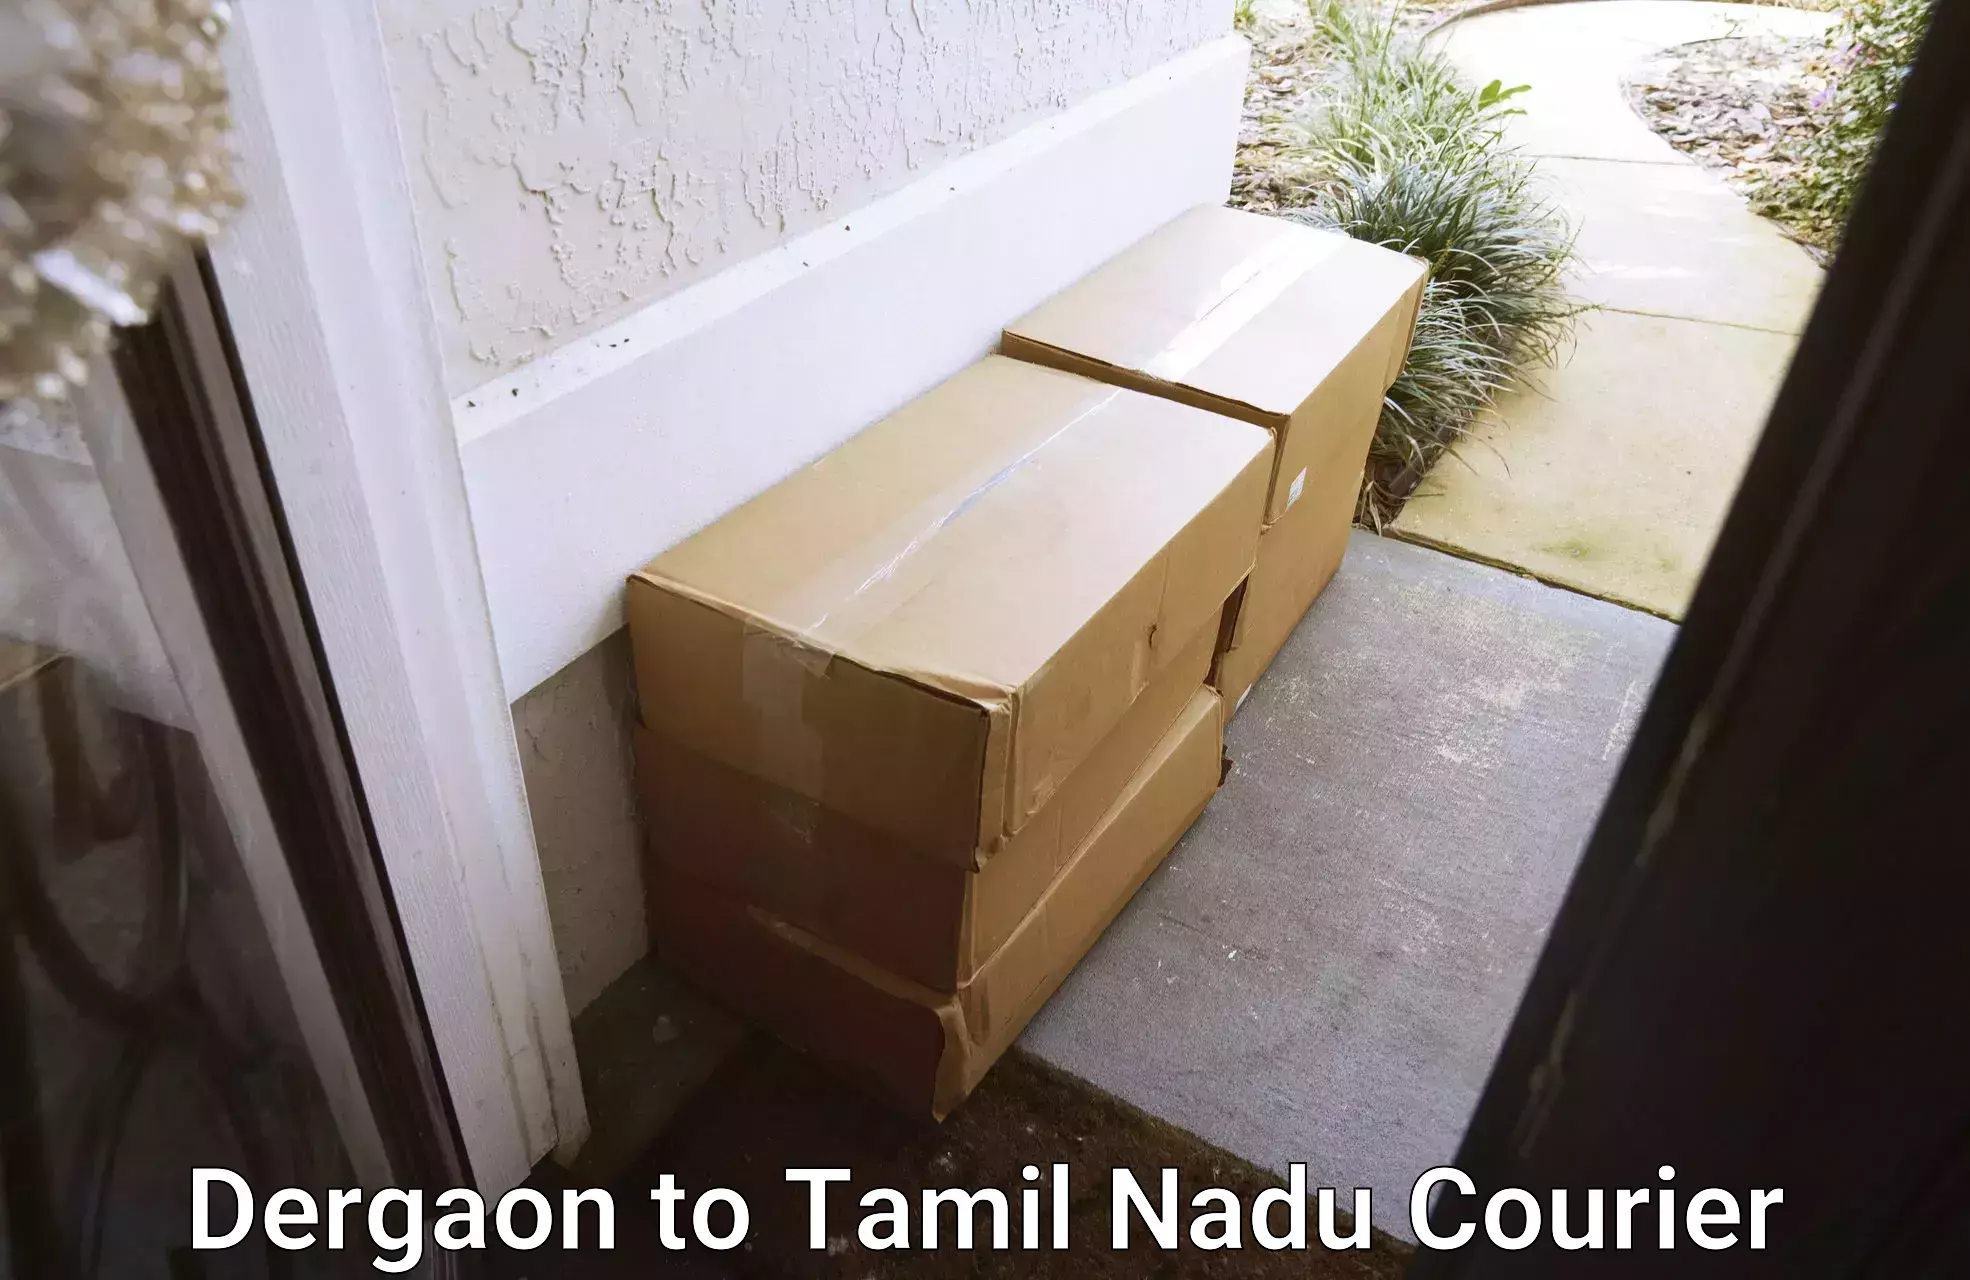 Courier service booking Dergaon to Tamil Nadu